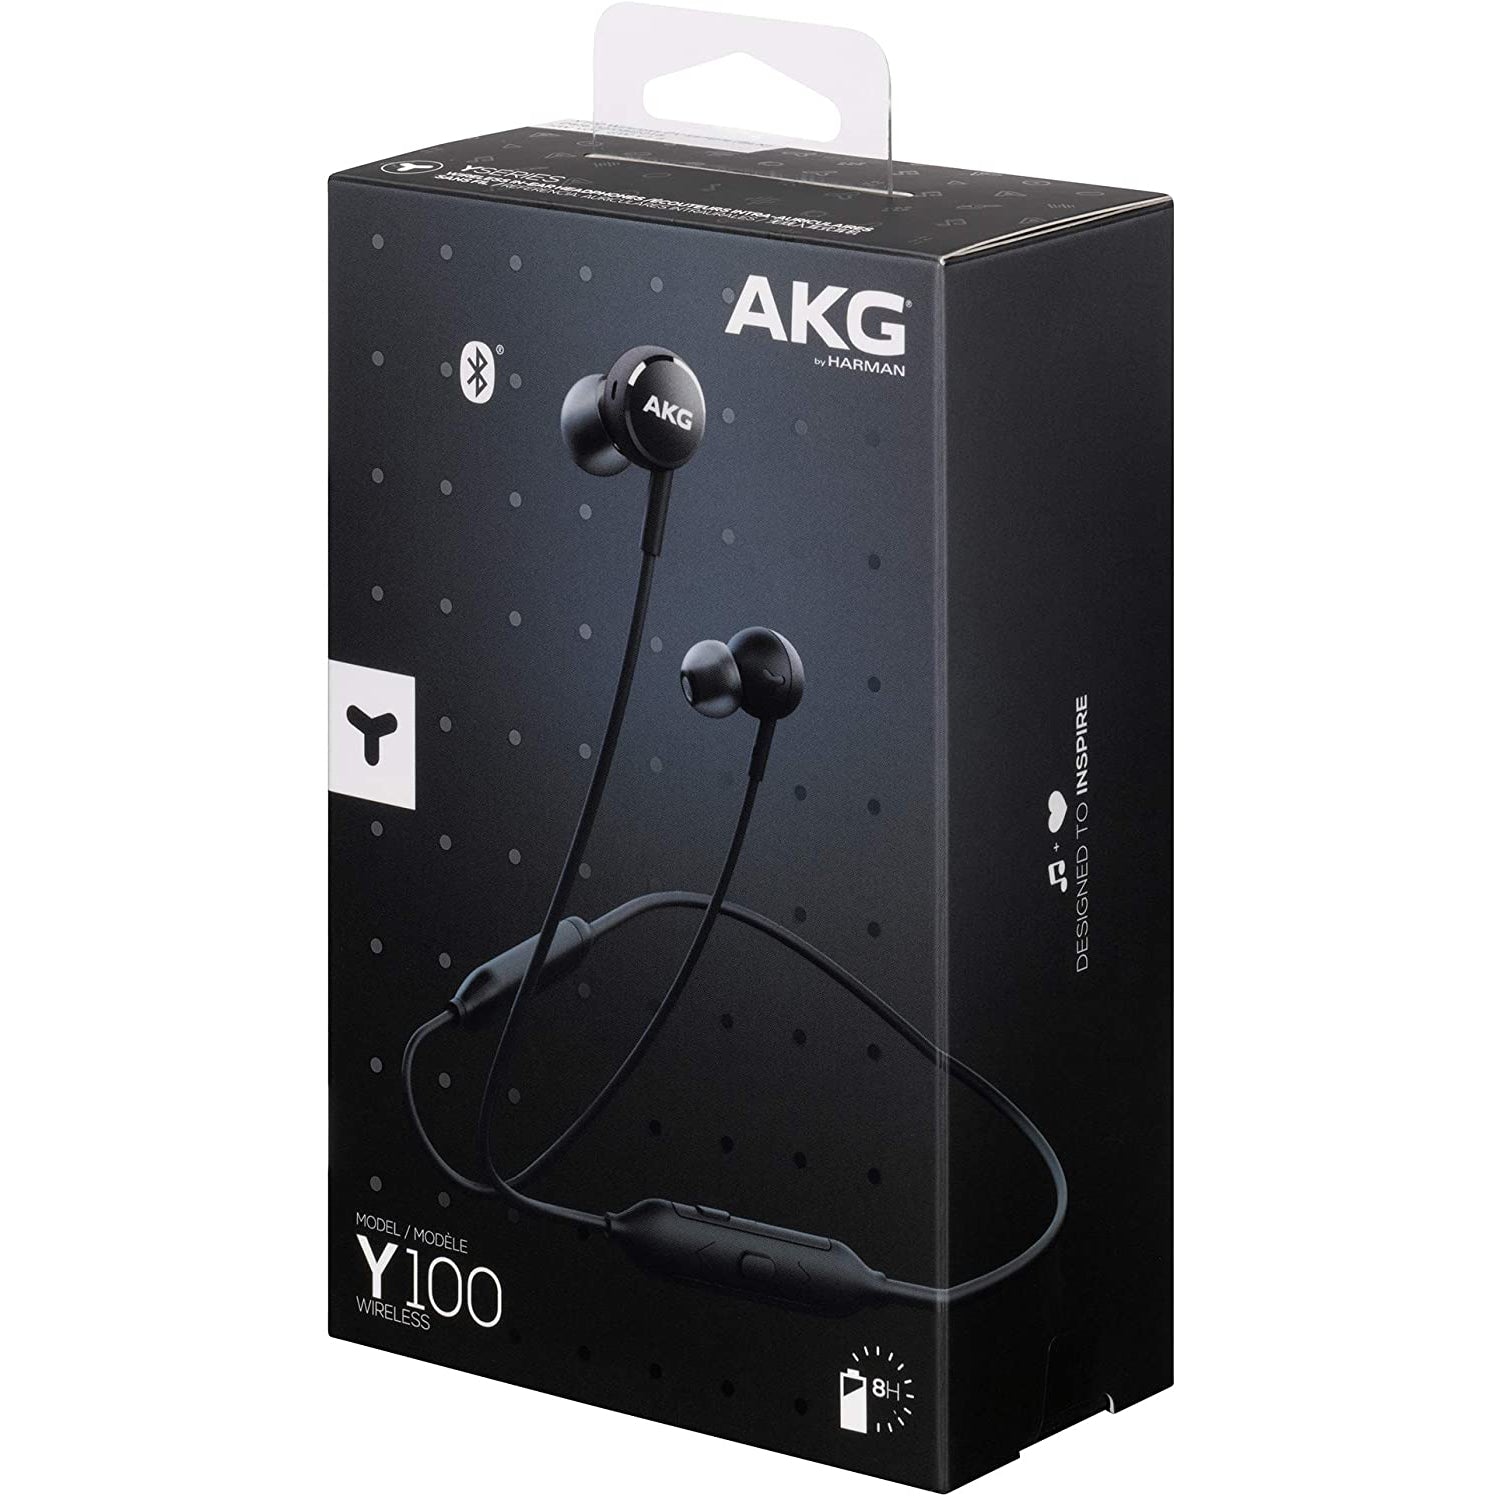 AKG Y100 Wireless In-Ear Headphones - Black - Refurbished Excellent